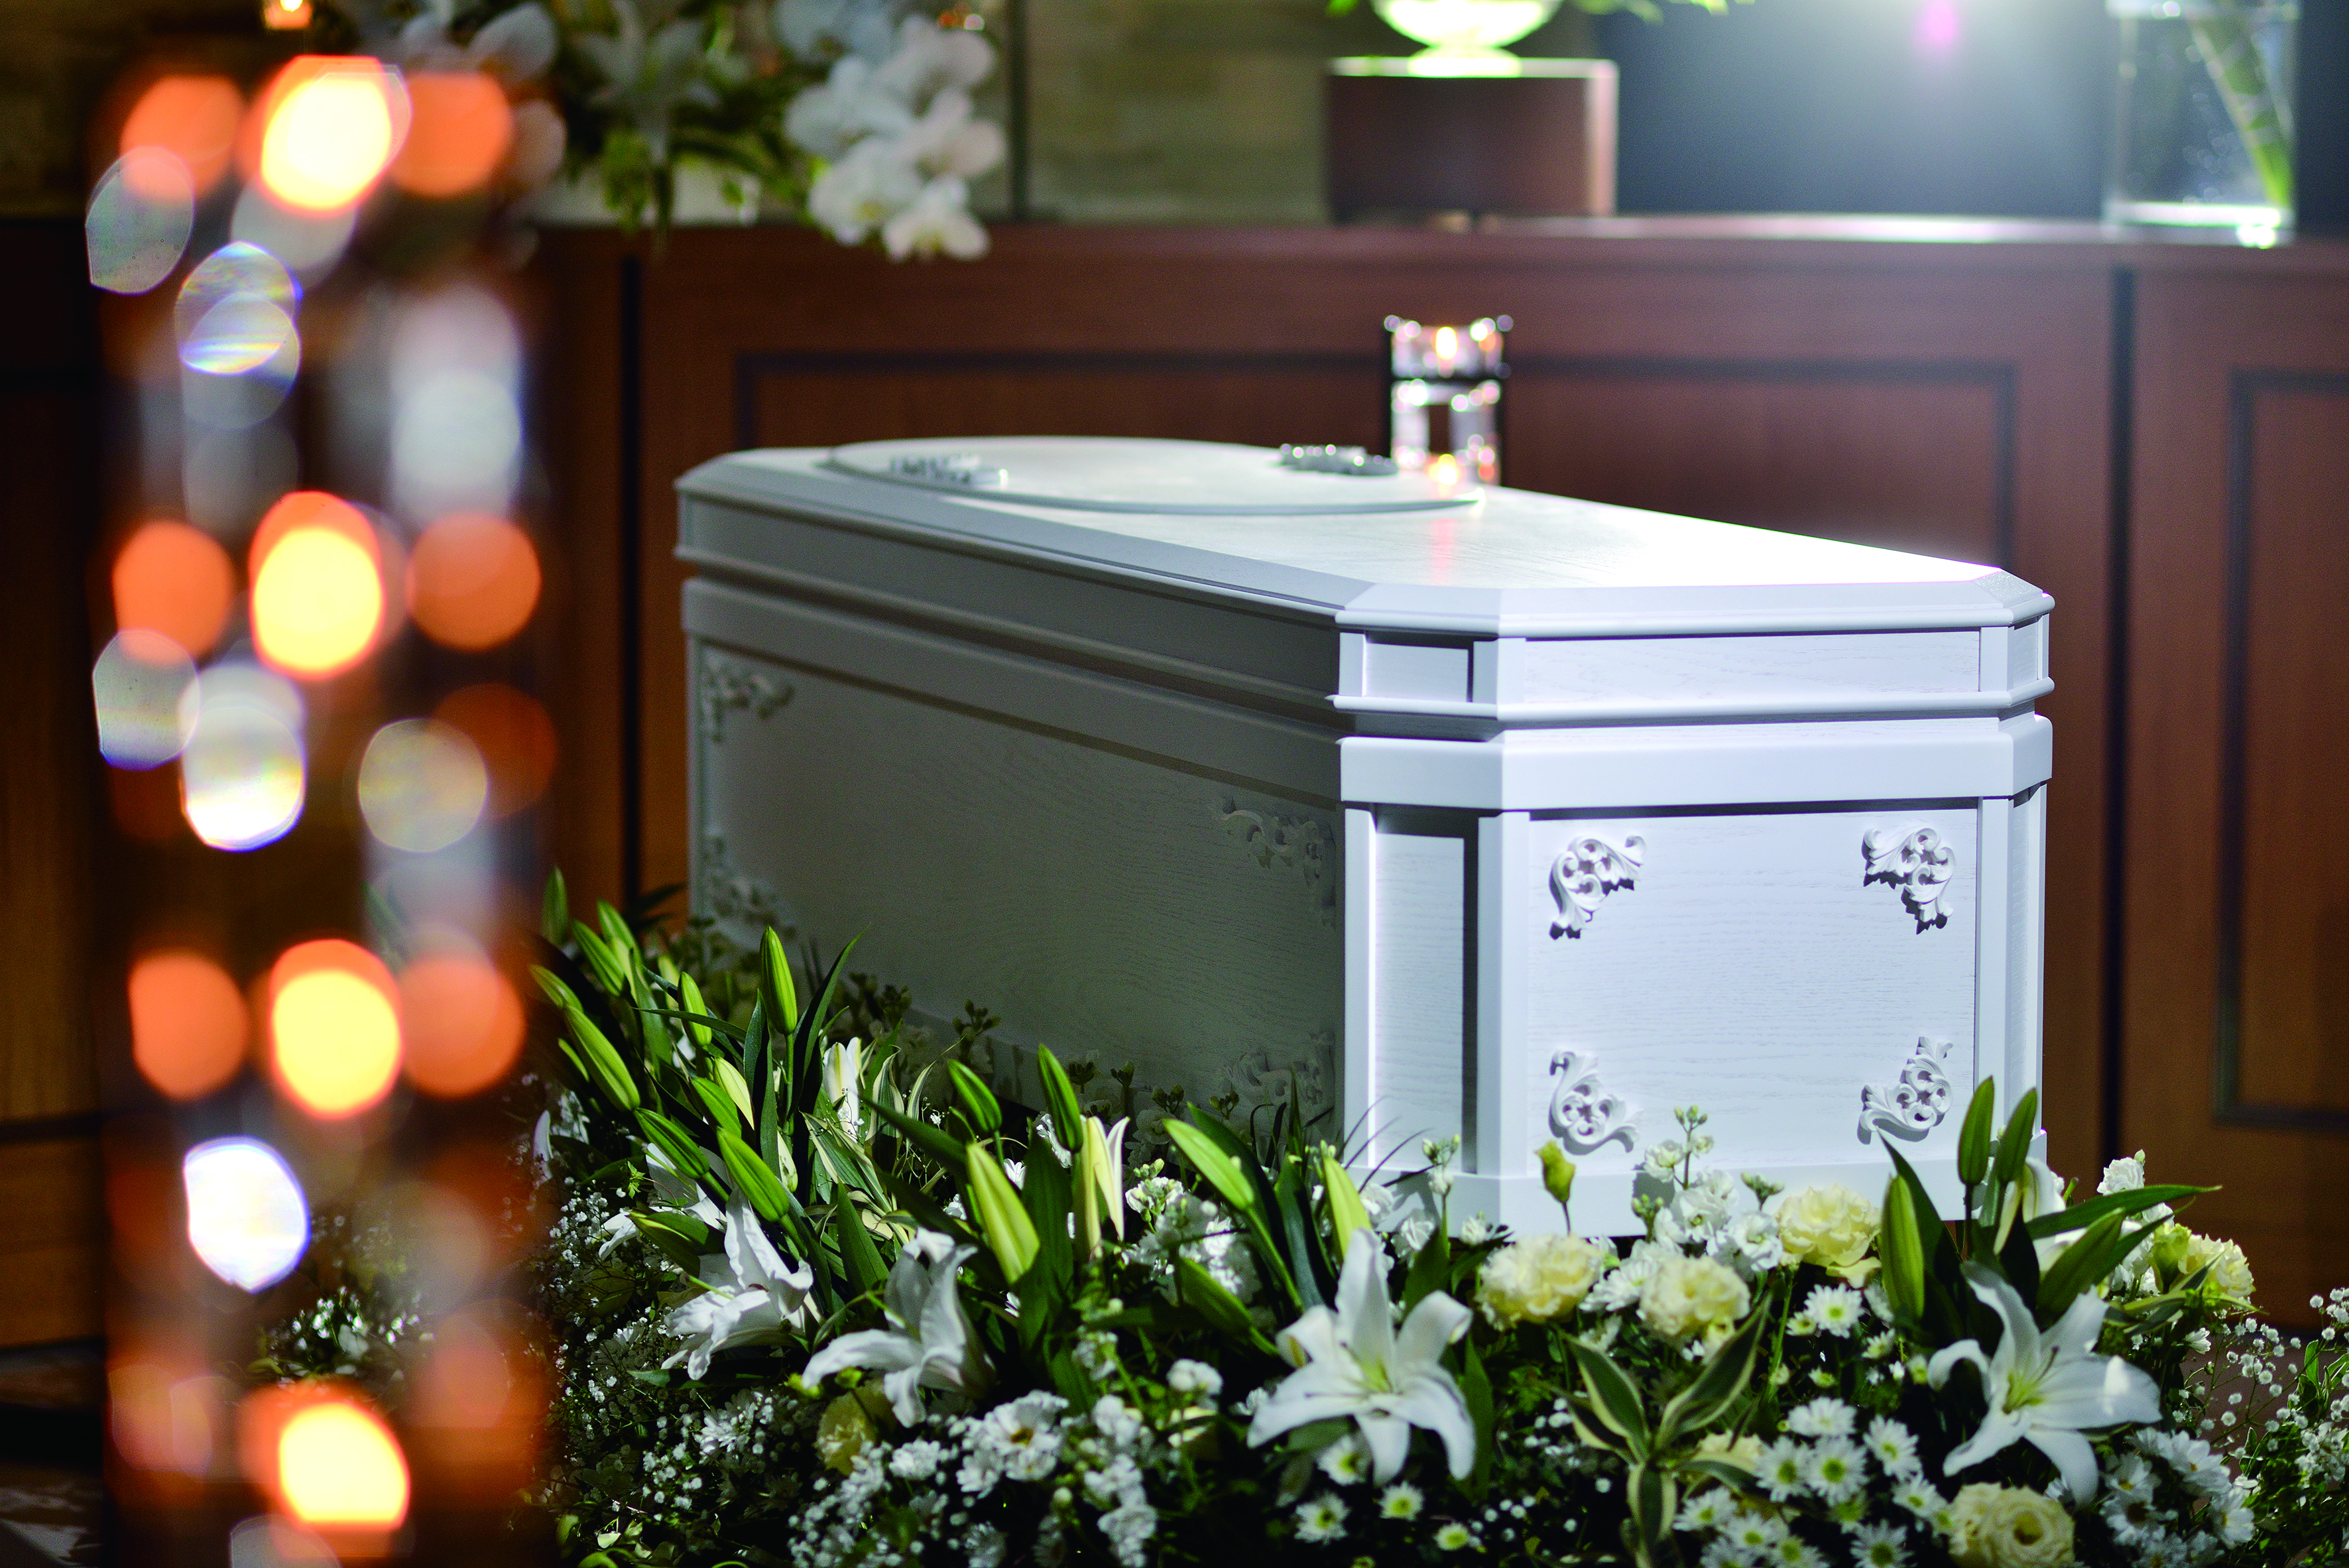 キリスト教の葬儀 カトリック プロテスタント の違い 公式 福岡 大分の葬儀 葬式 家族葬の斎場は西日本典礼 大分典礼